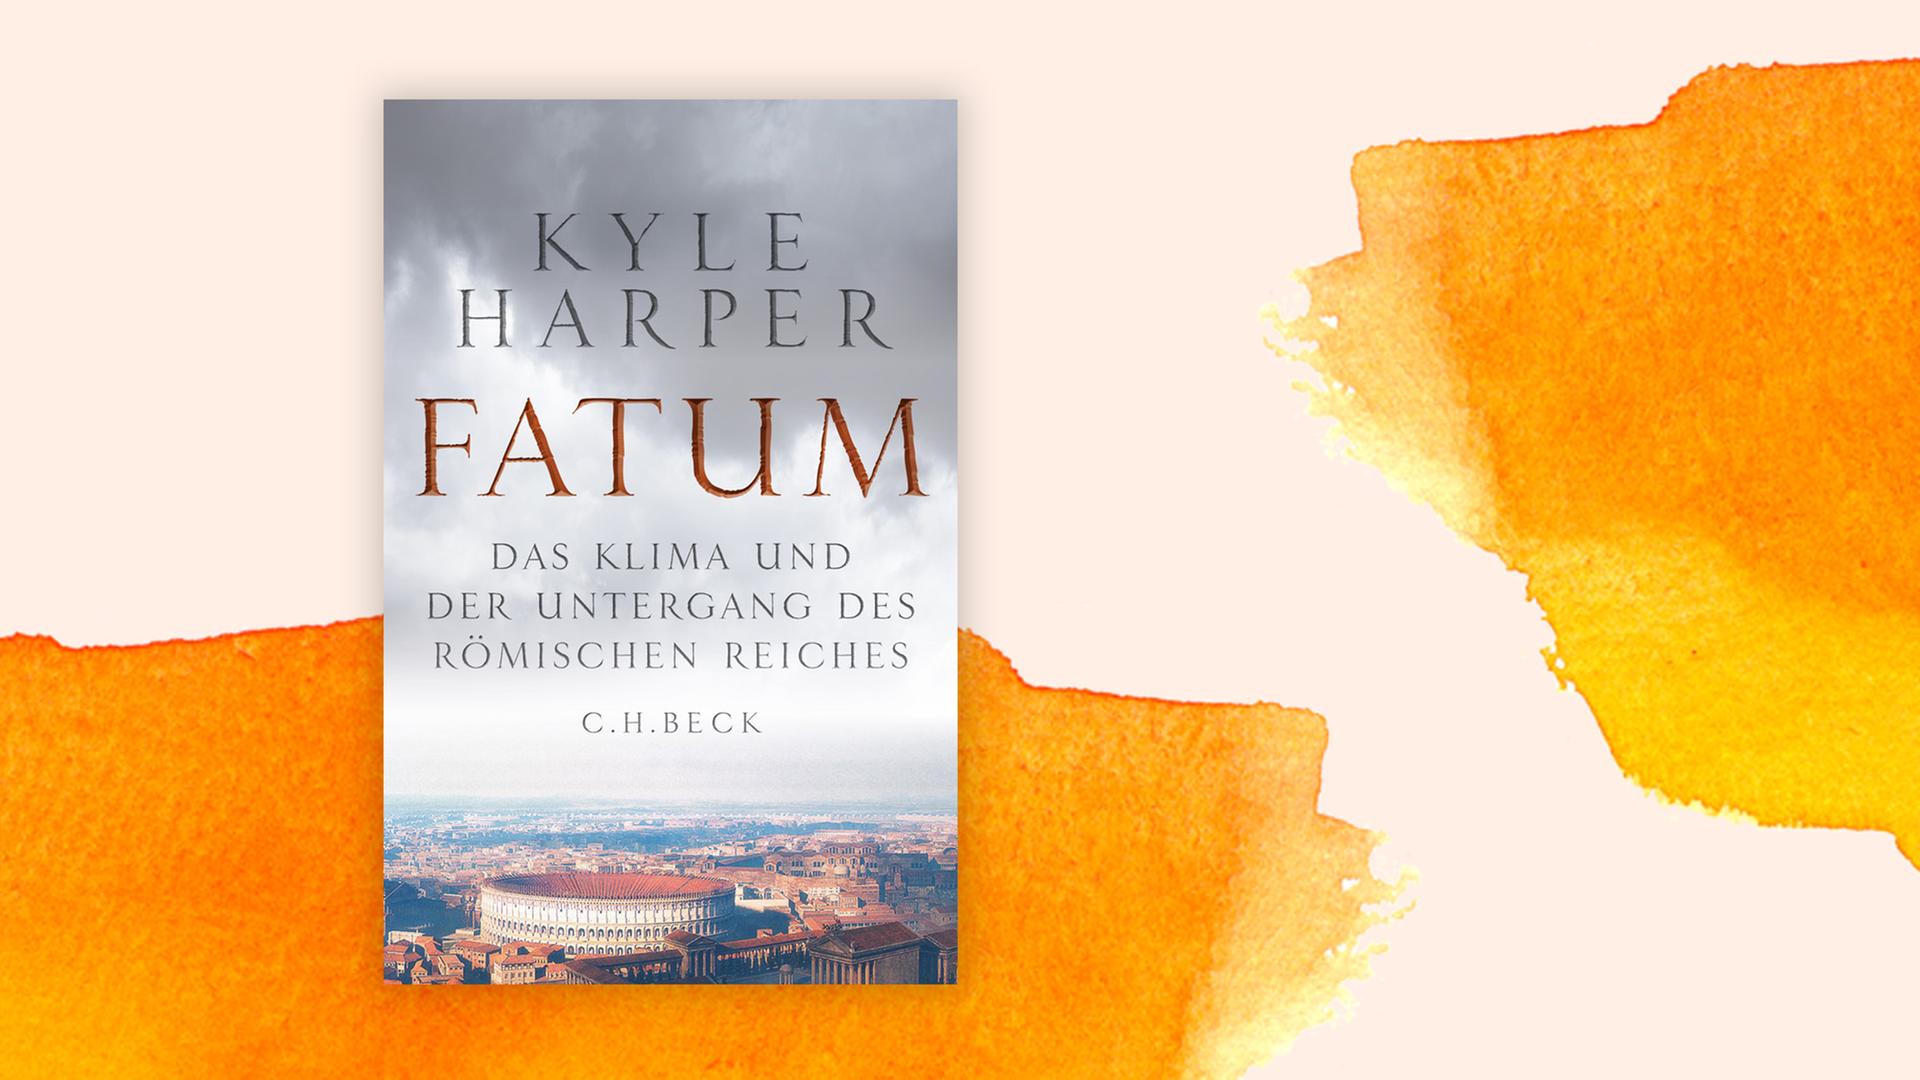 Buchcover "Fatum: Das Klima und der Untergang des Römischen Reiches" von Kyle Harper. Zu sehen ist in einer Luftaufnahme das Kolosseum in Rom.